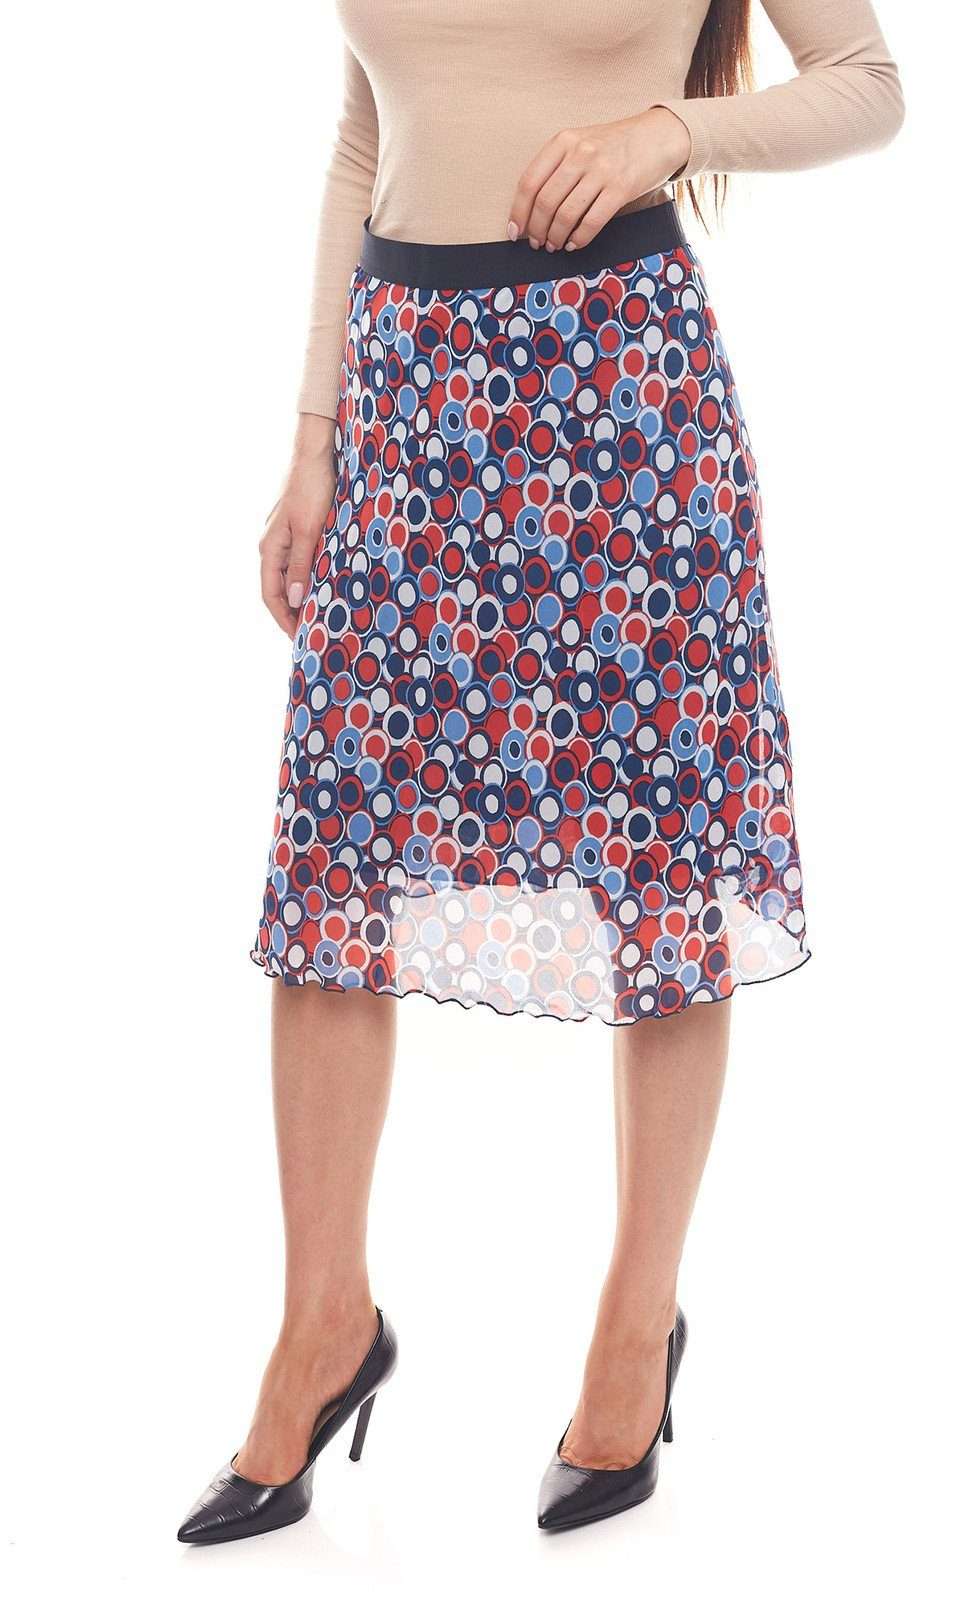 Летняя юбка-юбка, модная женская летняя юбка с ярким круговым узором, юбка-миди синего цвета